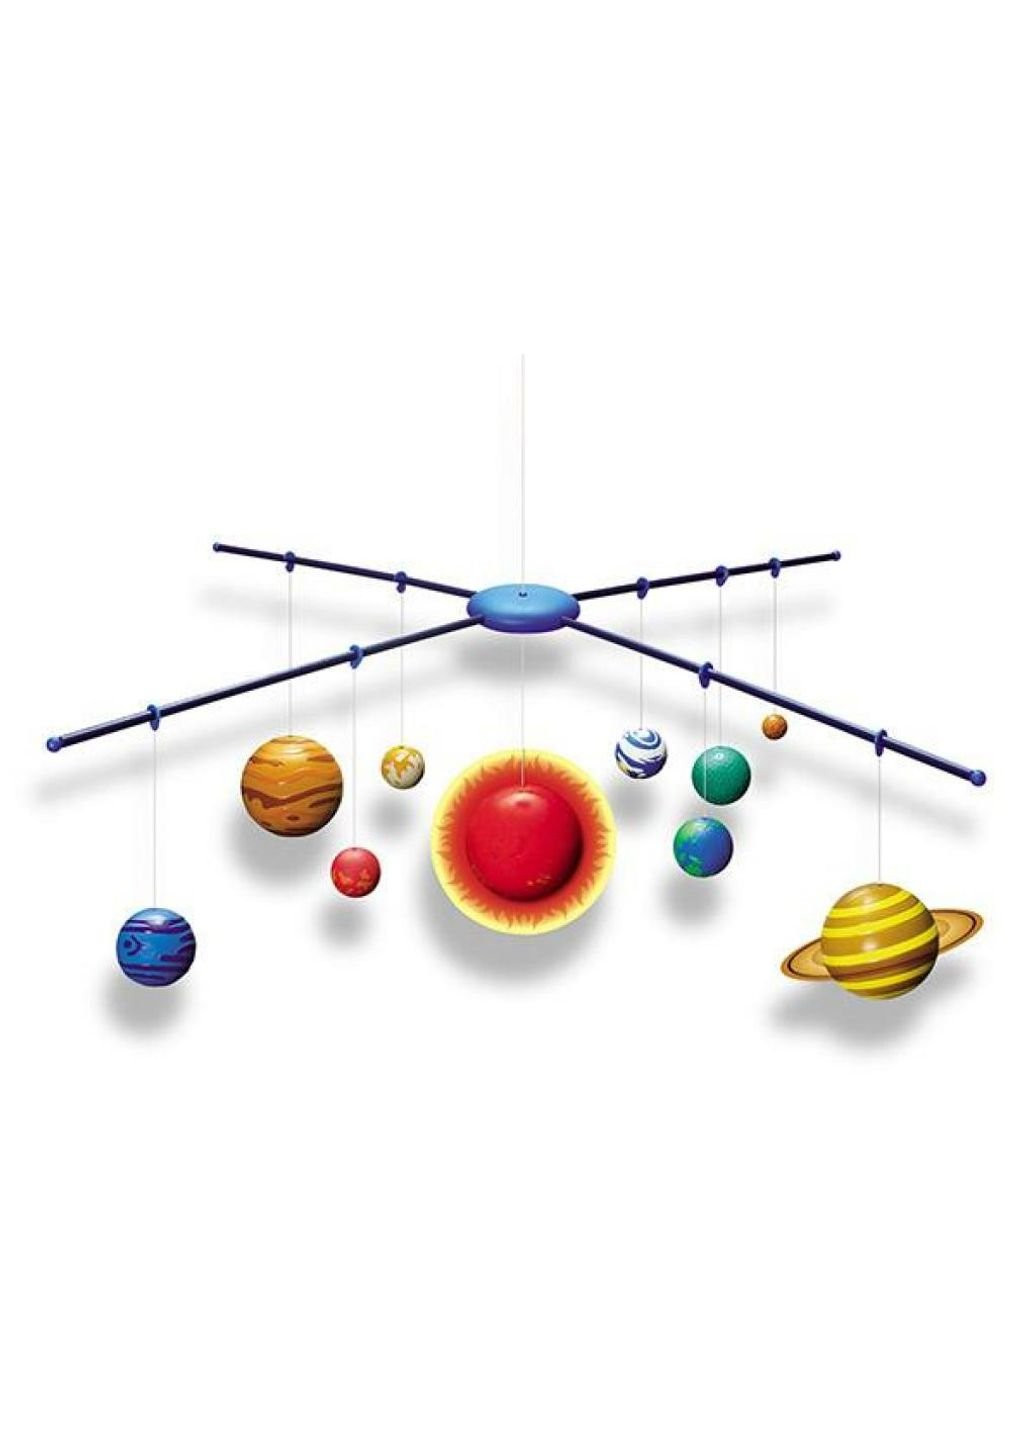 Набор для экспериментов для исследований 3D-модель Солнечной системы 4М (252409769)